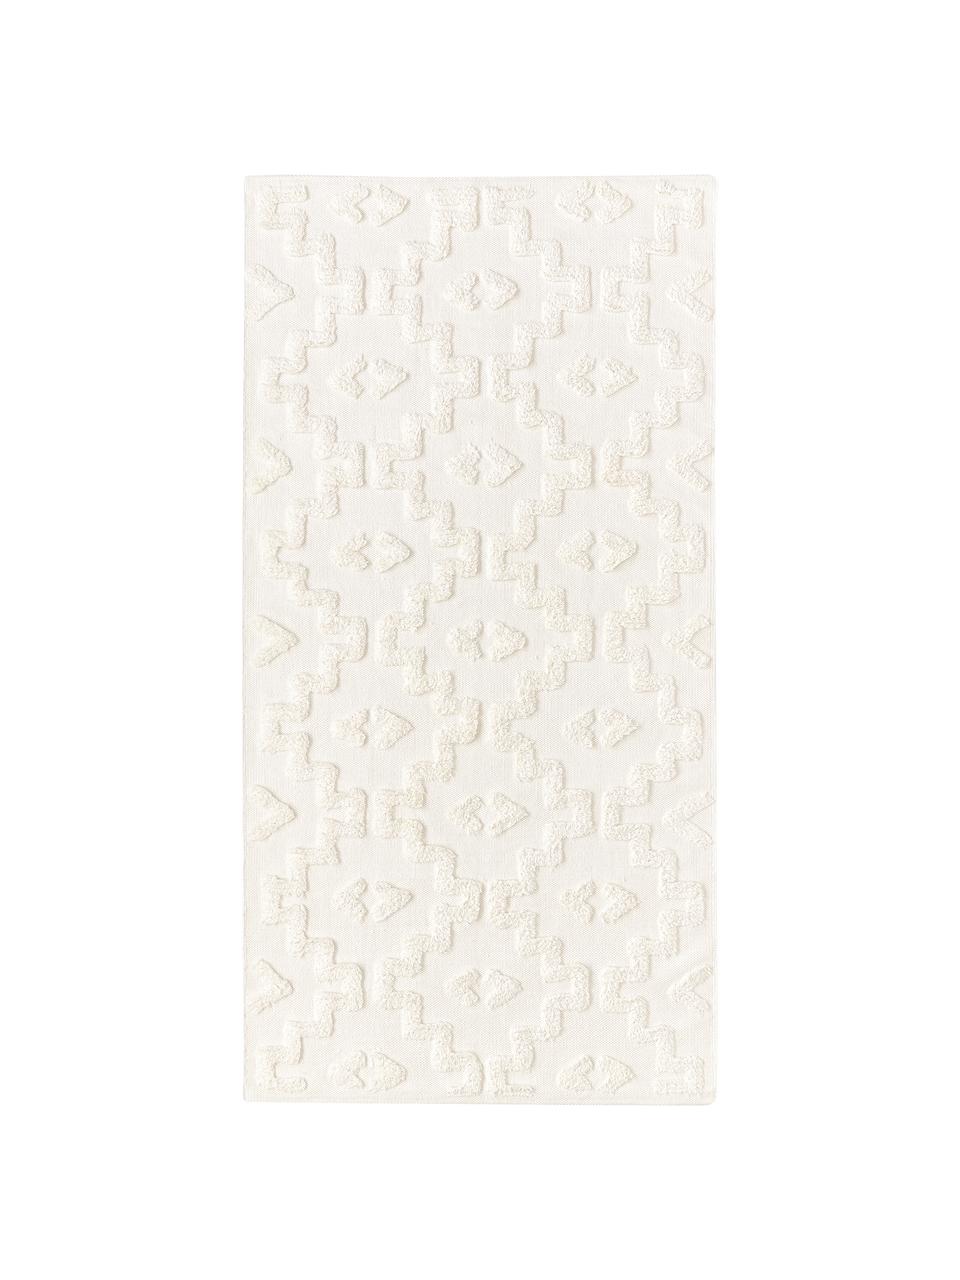 Tappeto in cotone tessuto a mano con struttura in rilievo Idris, 100% cotone, Color crema, Larg. 80 x Lung. 150 cm (taglia XS)